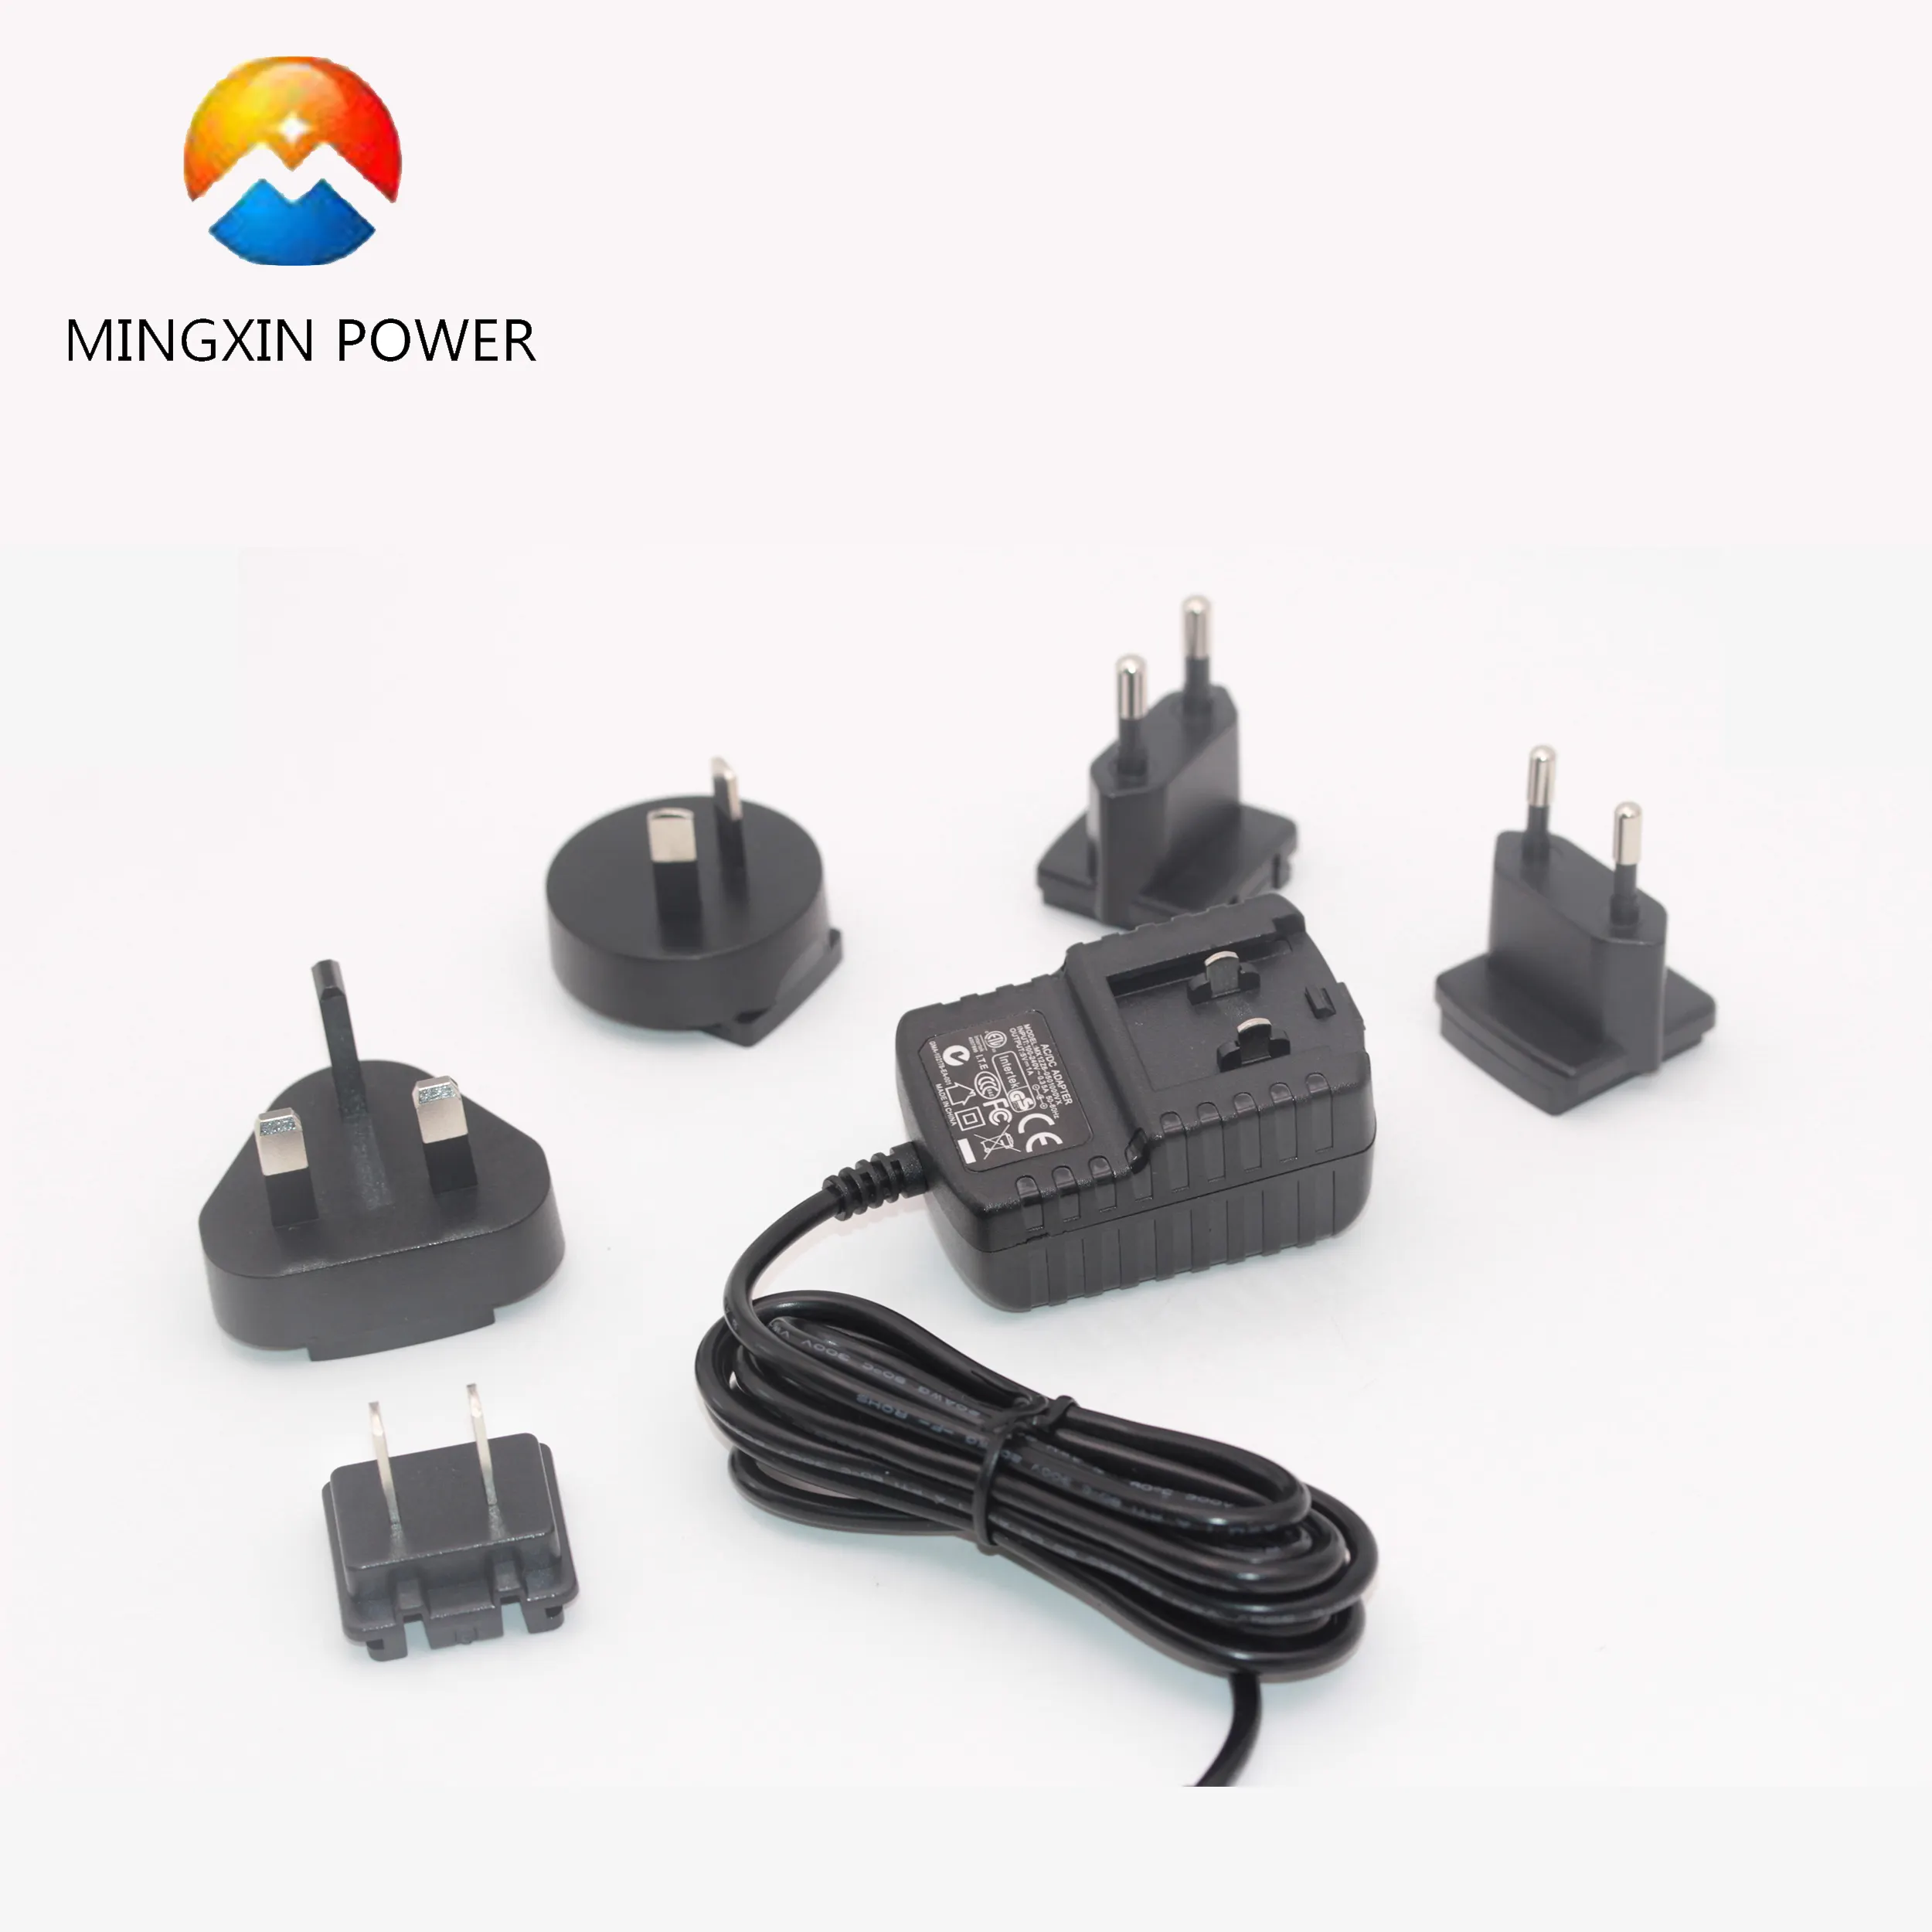 100-240V ac Input universal 5v 2a eu/uk /us/eu plug multi country power adapter